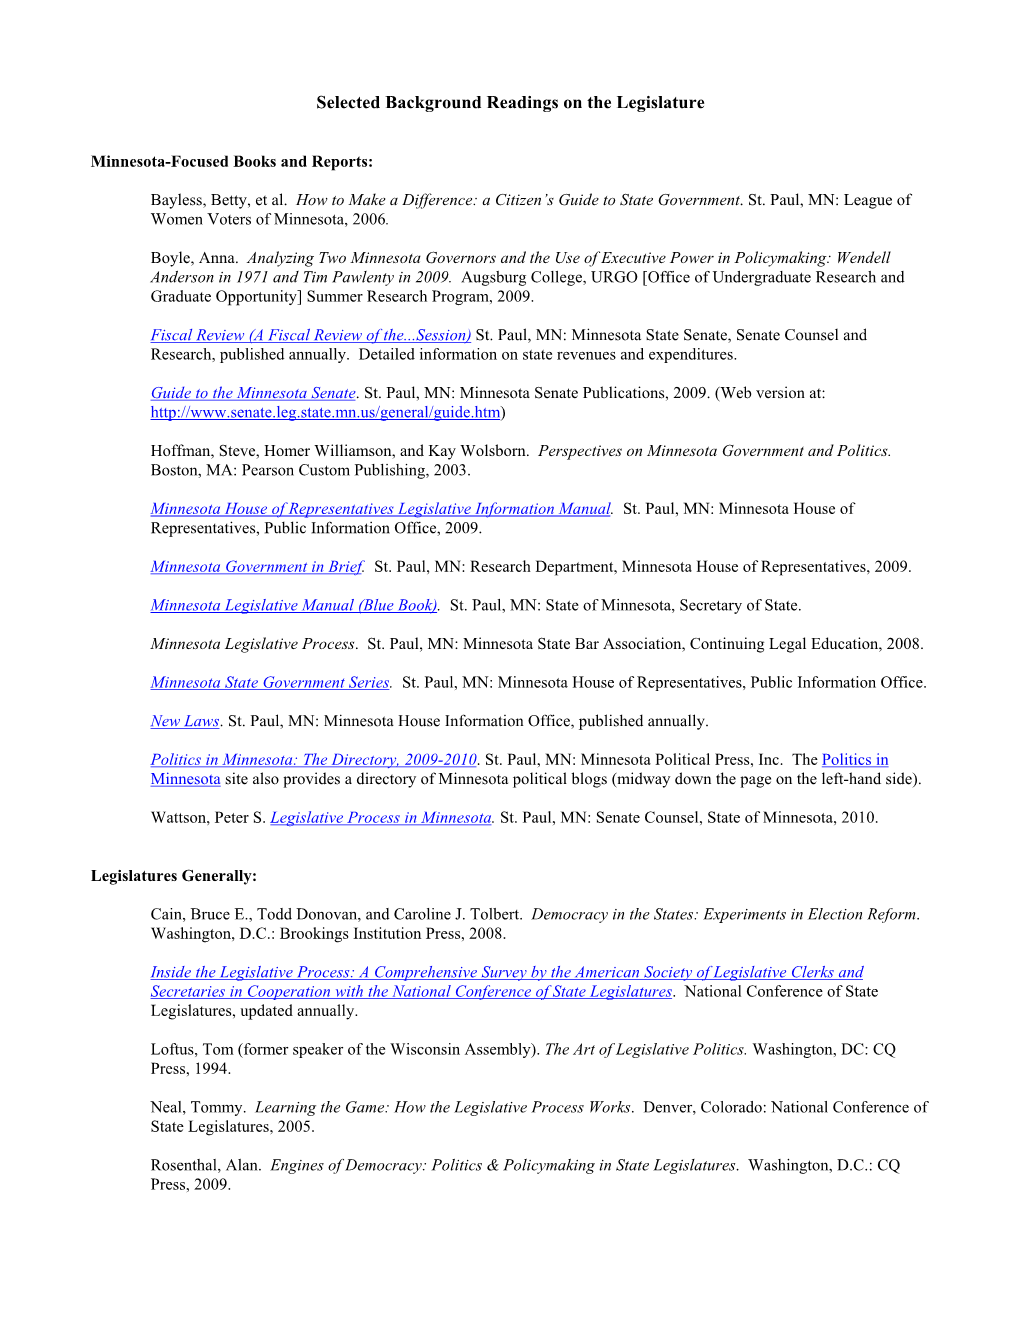 Background Readings on the Legislature